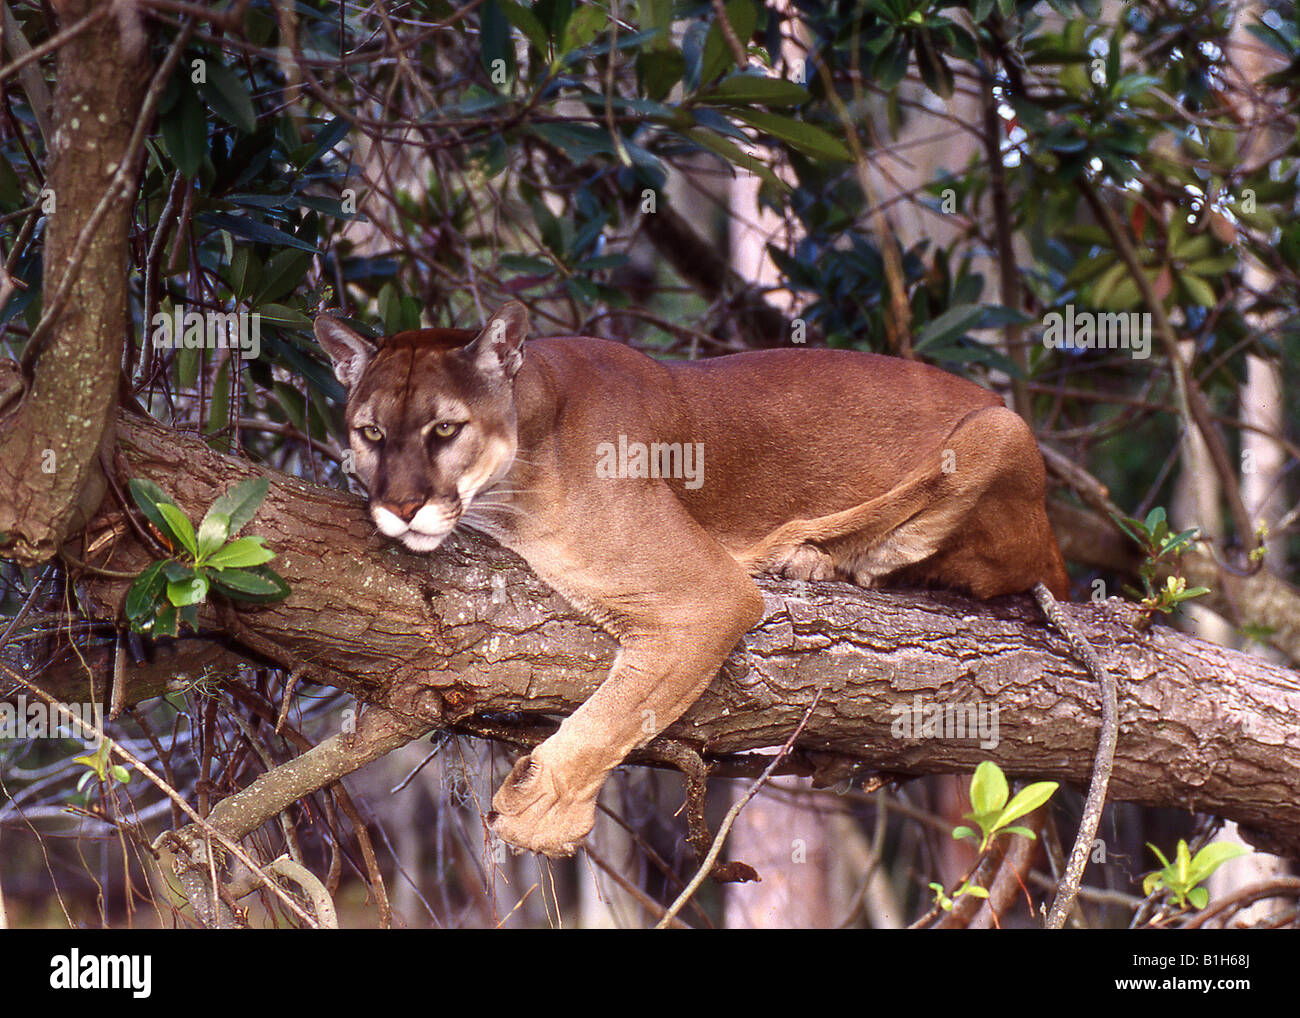 Florida panther (Puma concolor coryi 